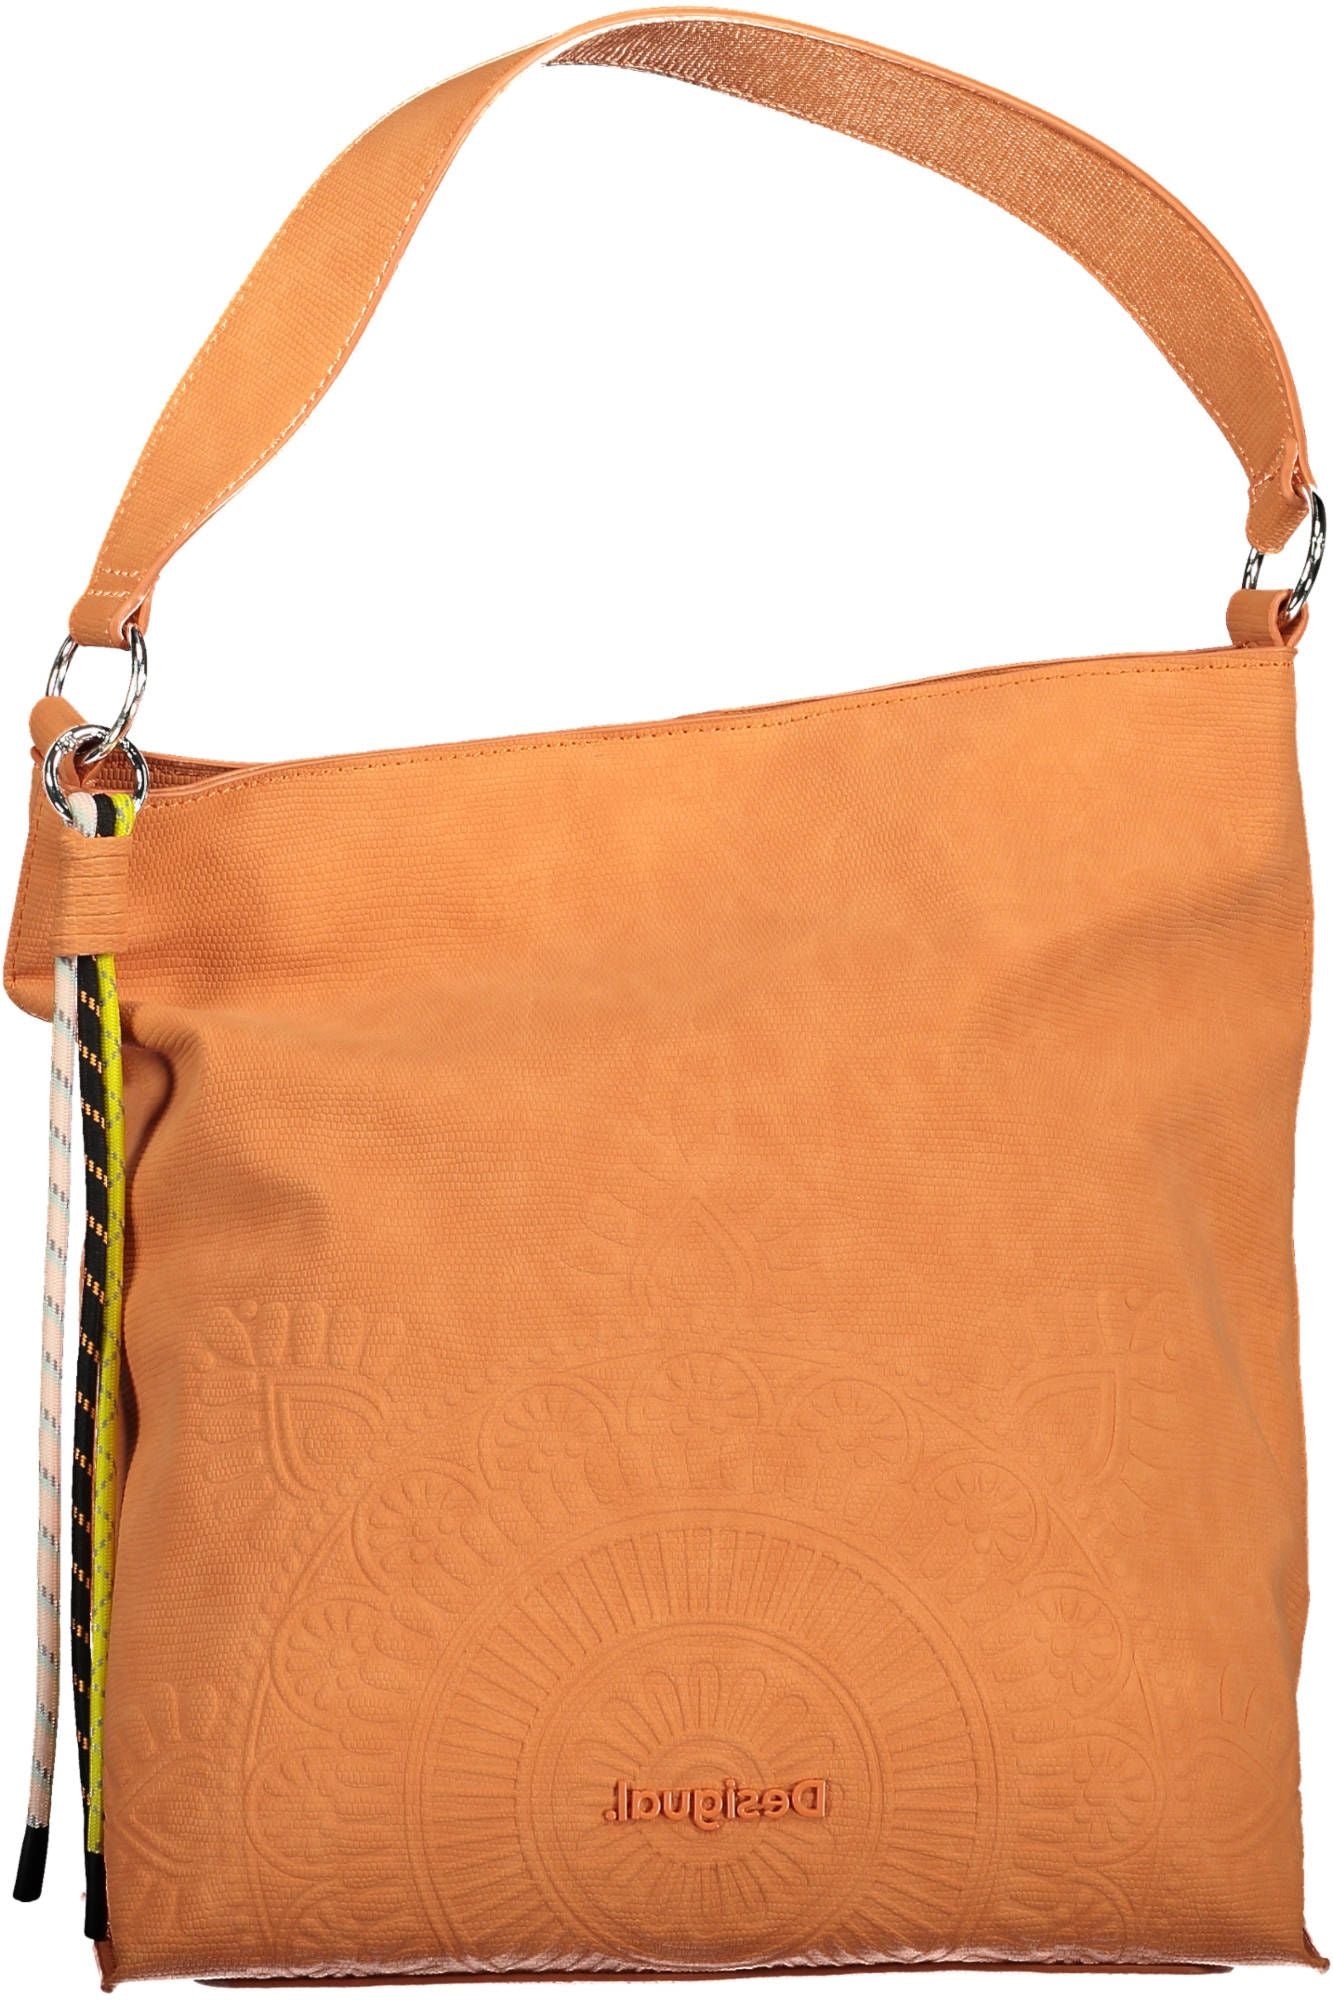 Chic Orange Shoulder Bag with Contrasting Details